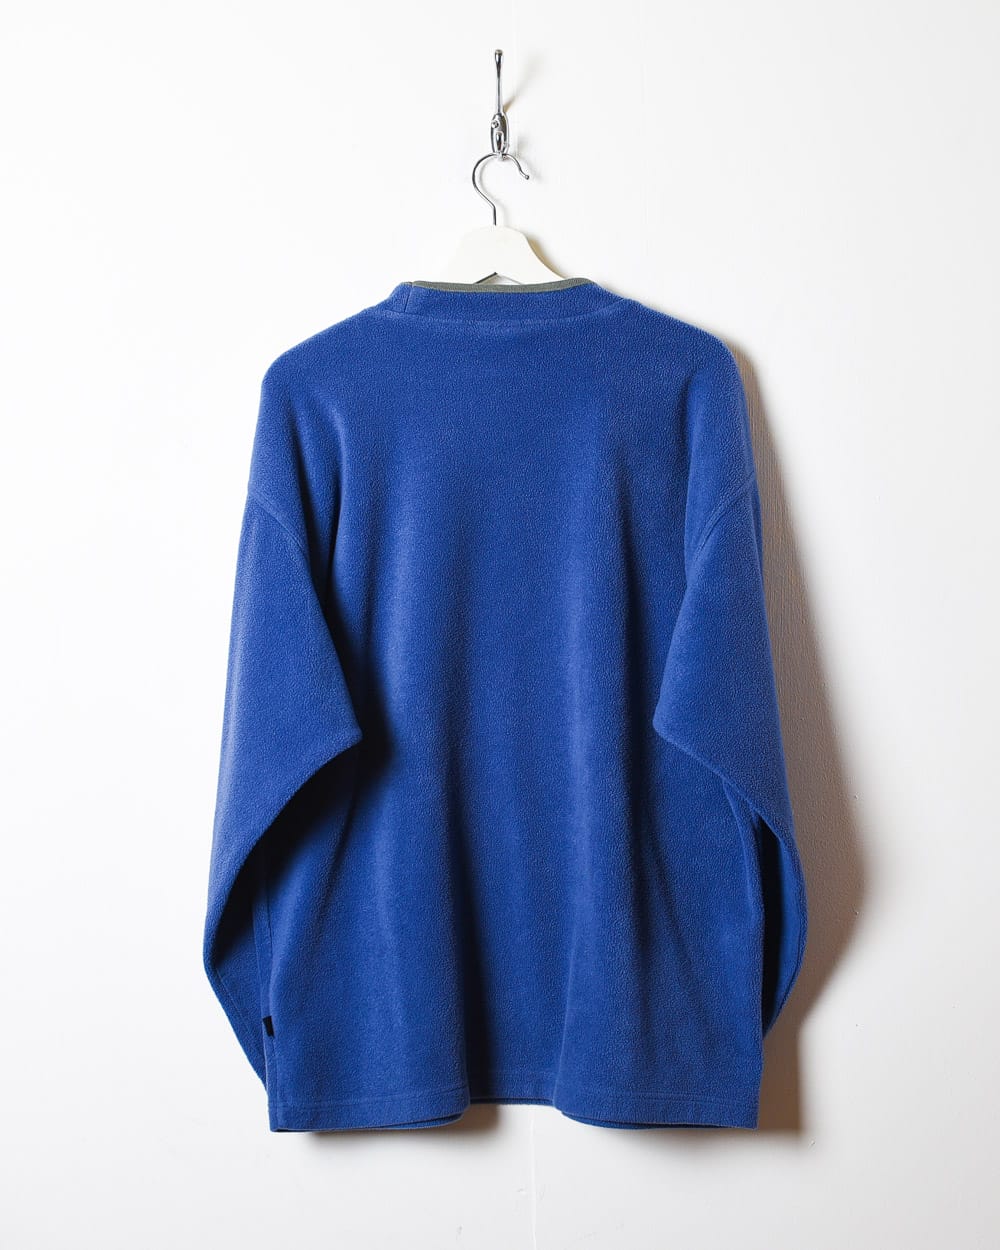 Blue Adidas Pullover Fleece - Medium